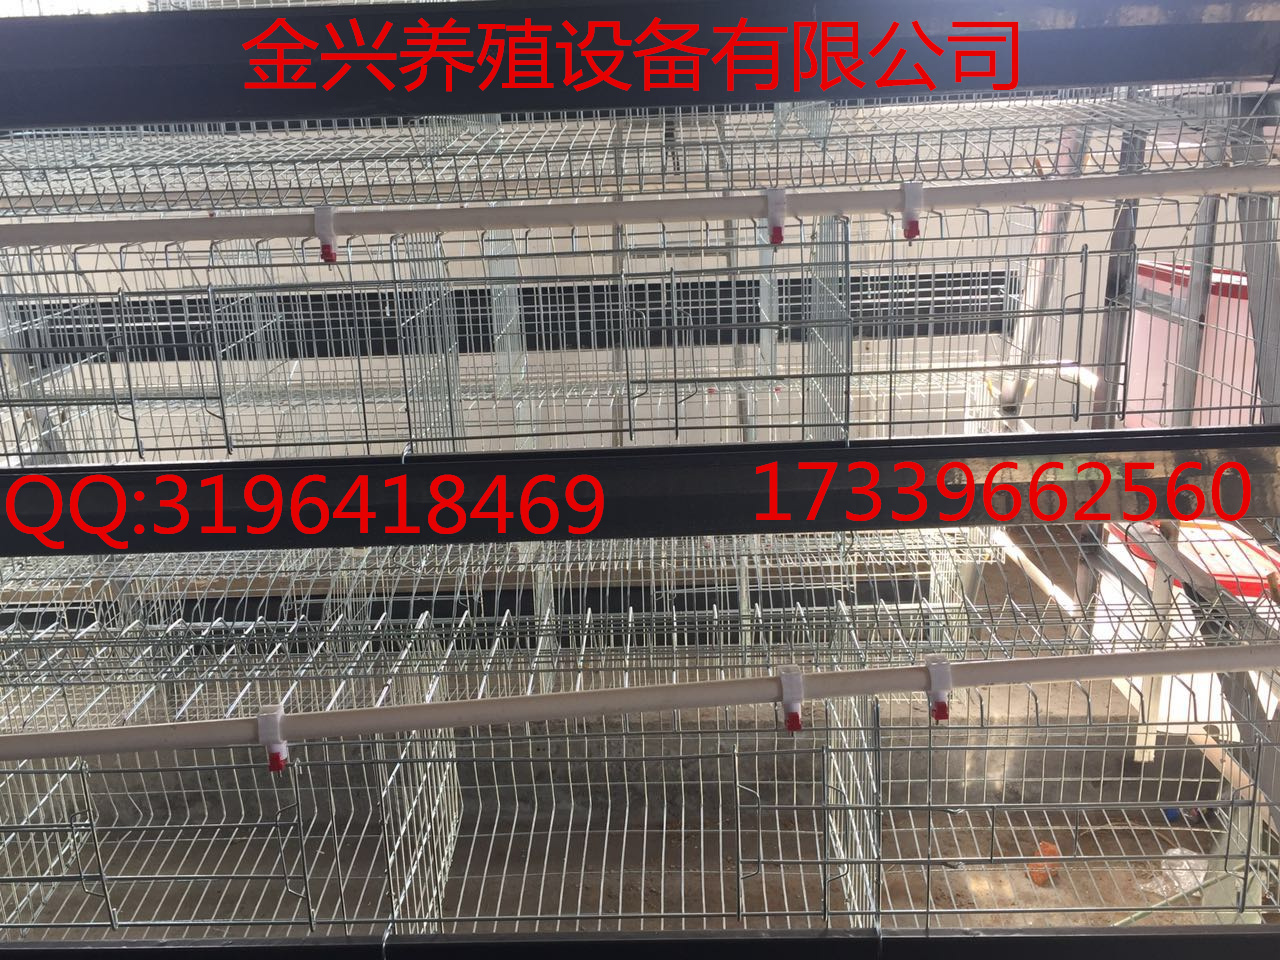 鸡笼价格阶梯式育雏笼蛋鸡笼厂供应金兴养殖设备供应各种养鸡设备图片